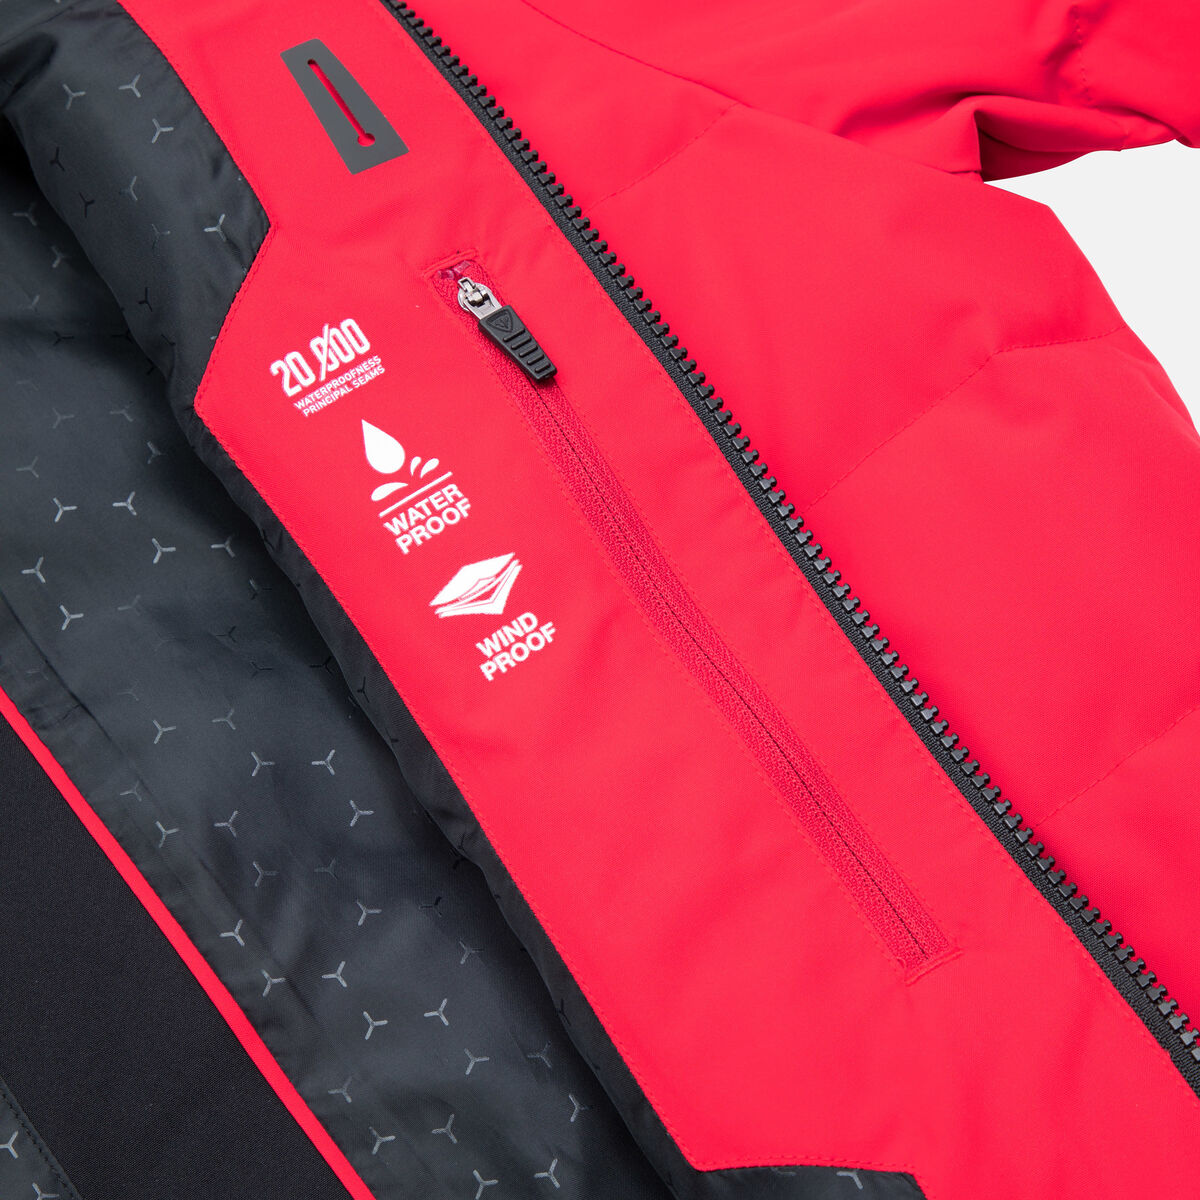 Rossignol Ski Jacket Rouge Crimson - Veste ski homme noir 2019